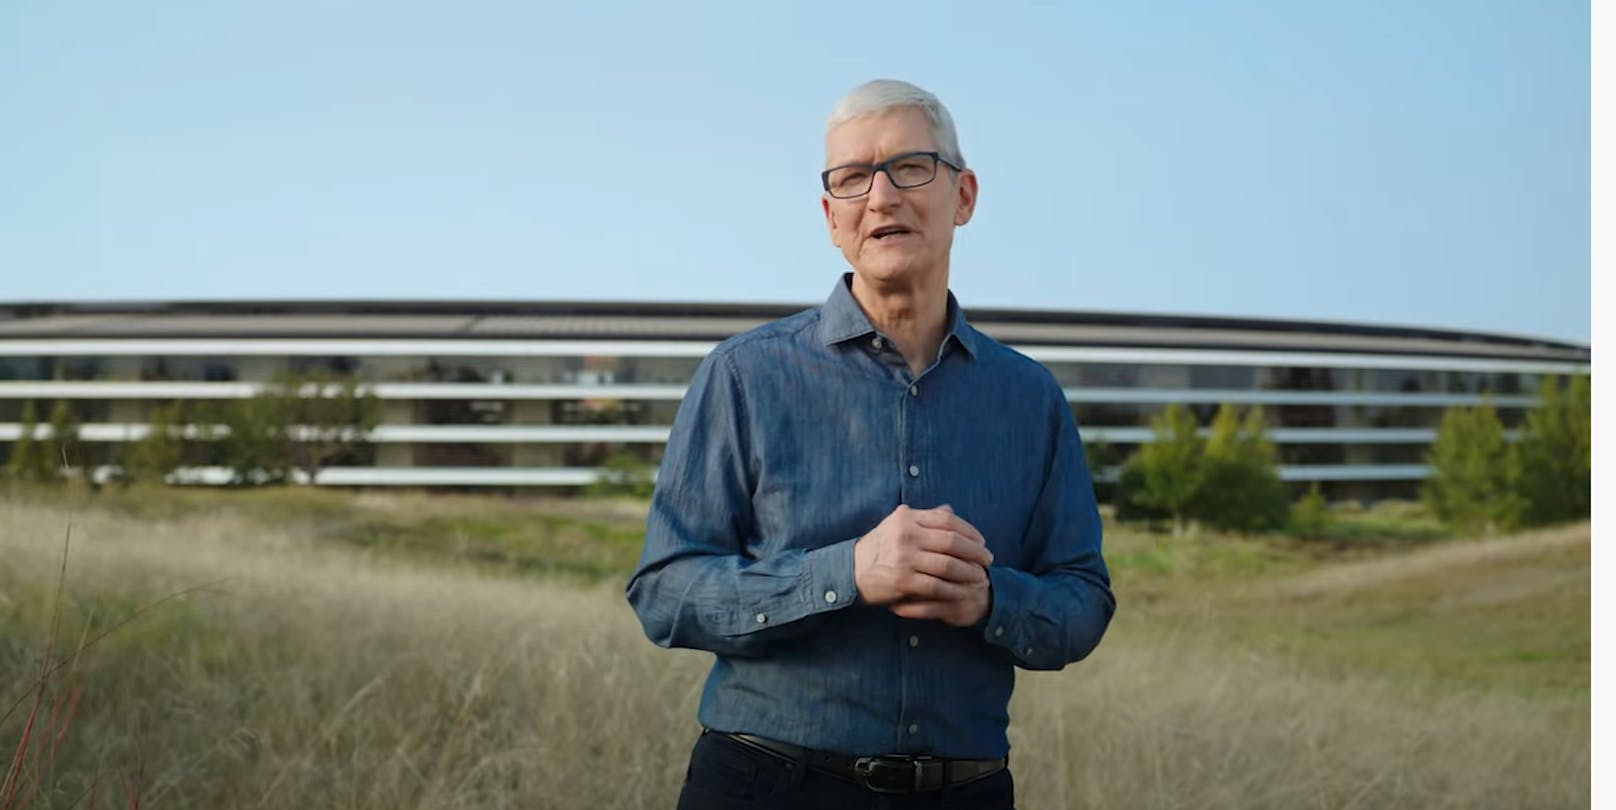 Der Fokus lag bei den Themen Musik und Mac, sagte Apple-CEO Tim Cook bei der Begrüßung. Es war das zweite Apple-Event innerhalb weniger Wochen.